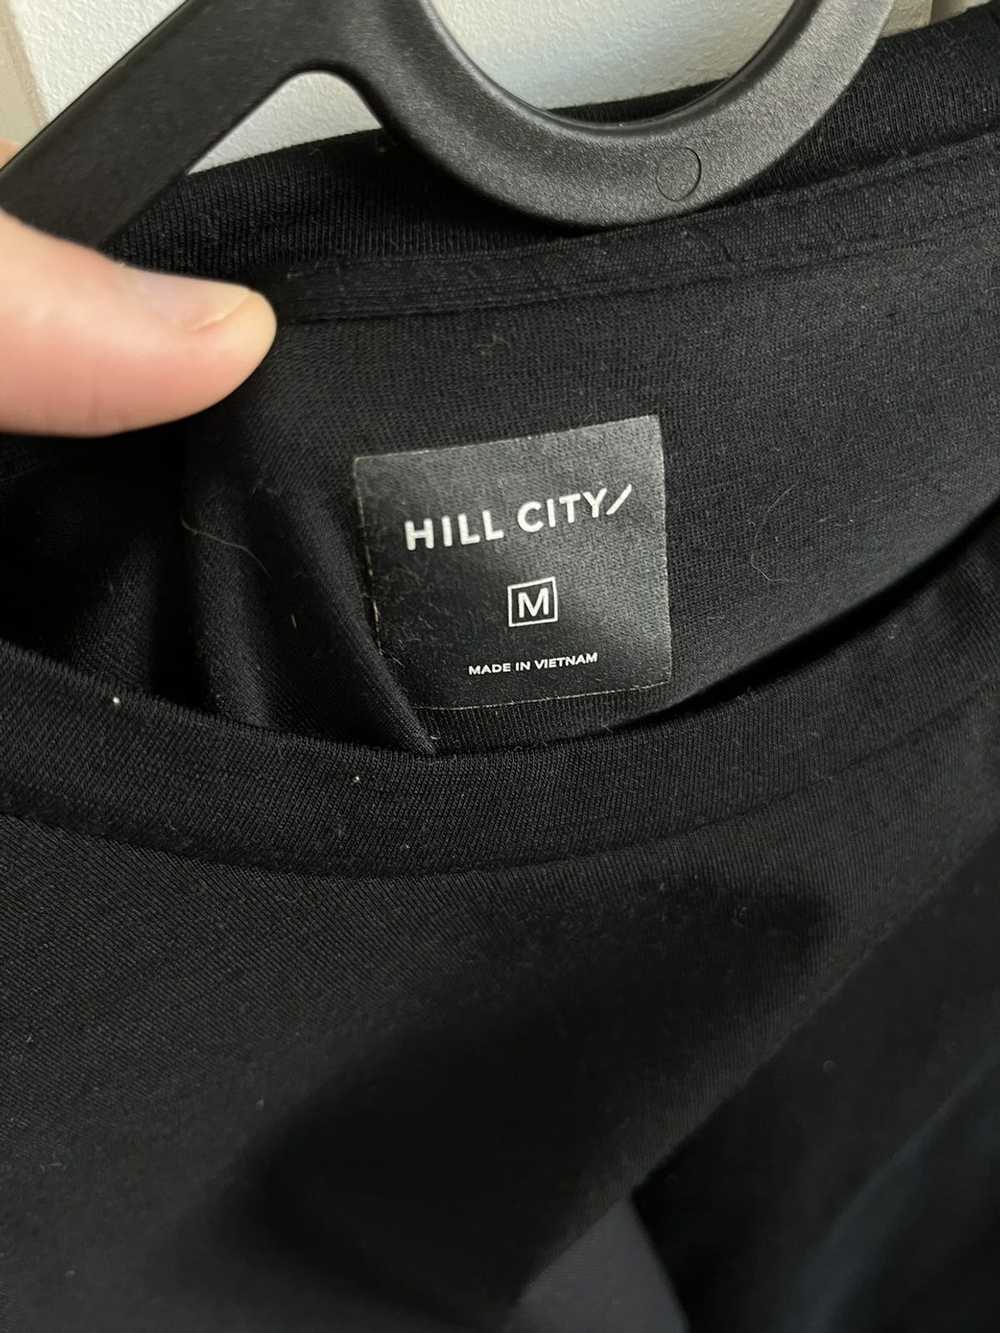 Gap Hill City Merino Wool Shirt - image 3